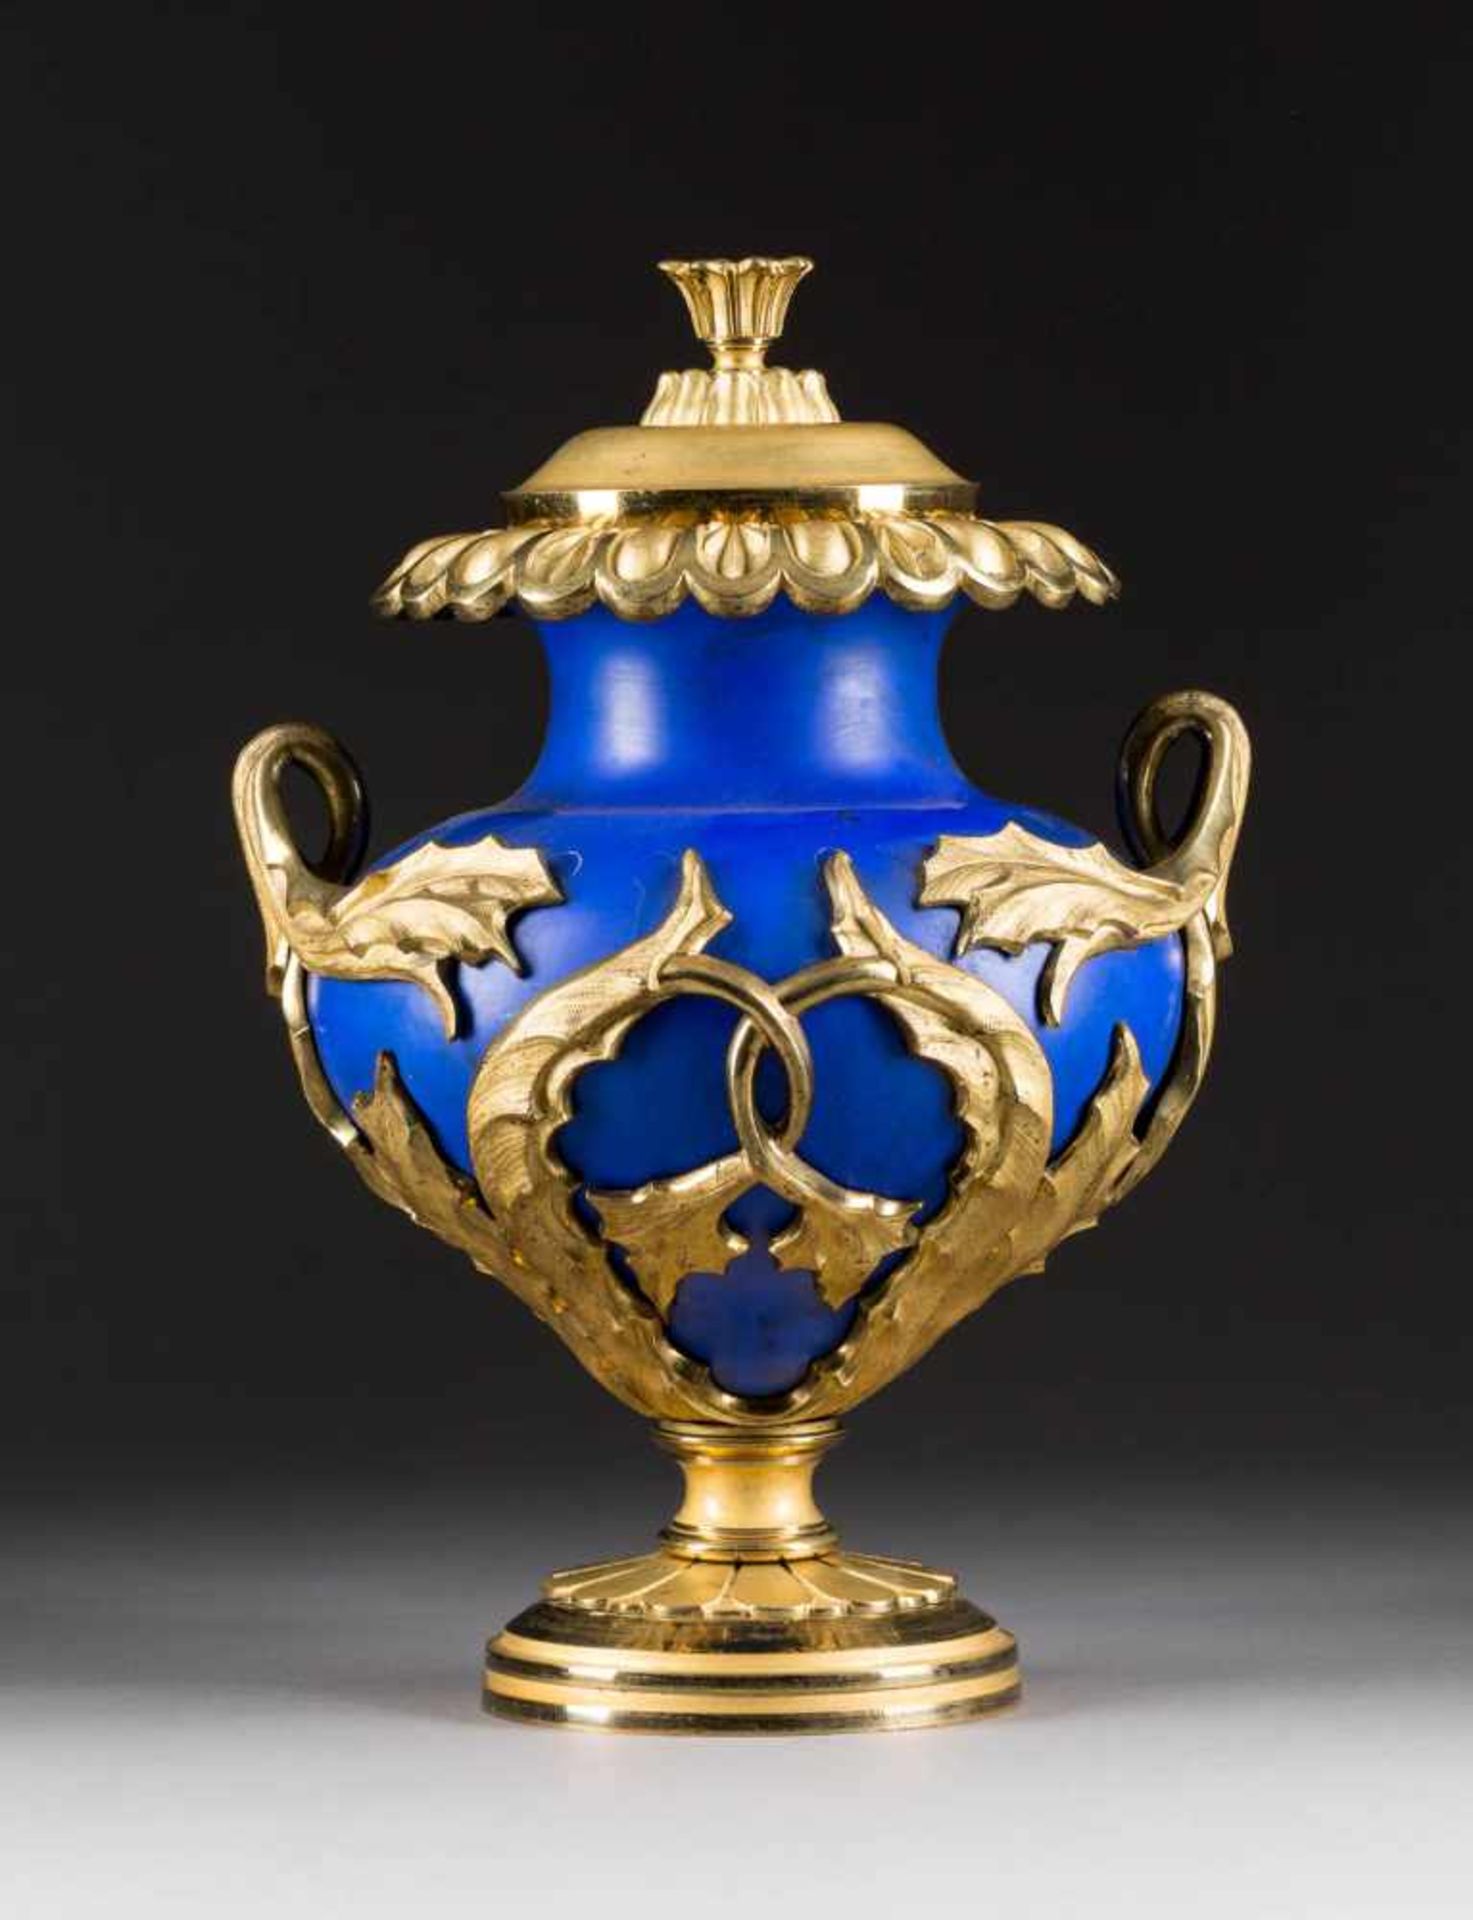 PRUNKDECKELVASE Wohl Russland, Mitte 19. Jh. Keramik, blau glasiert, vergoldete Bronzemontierung. H.